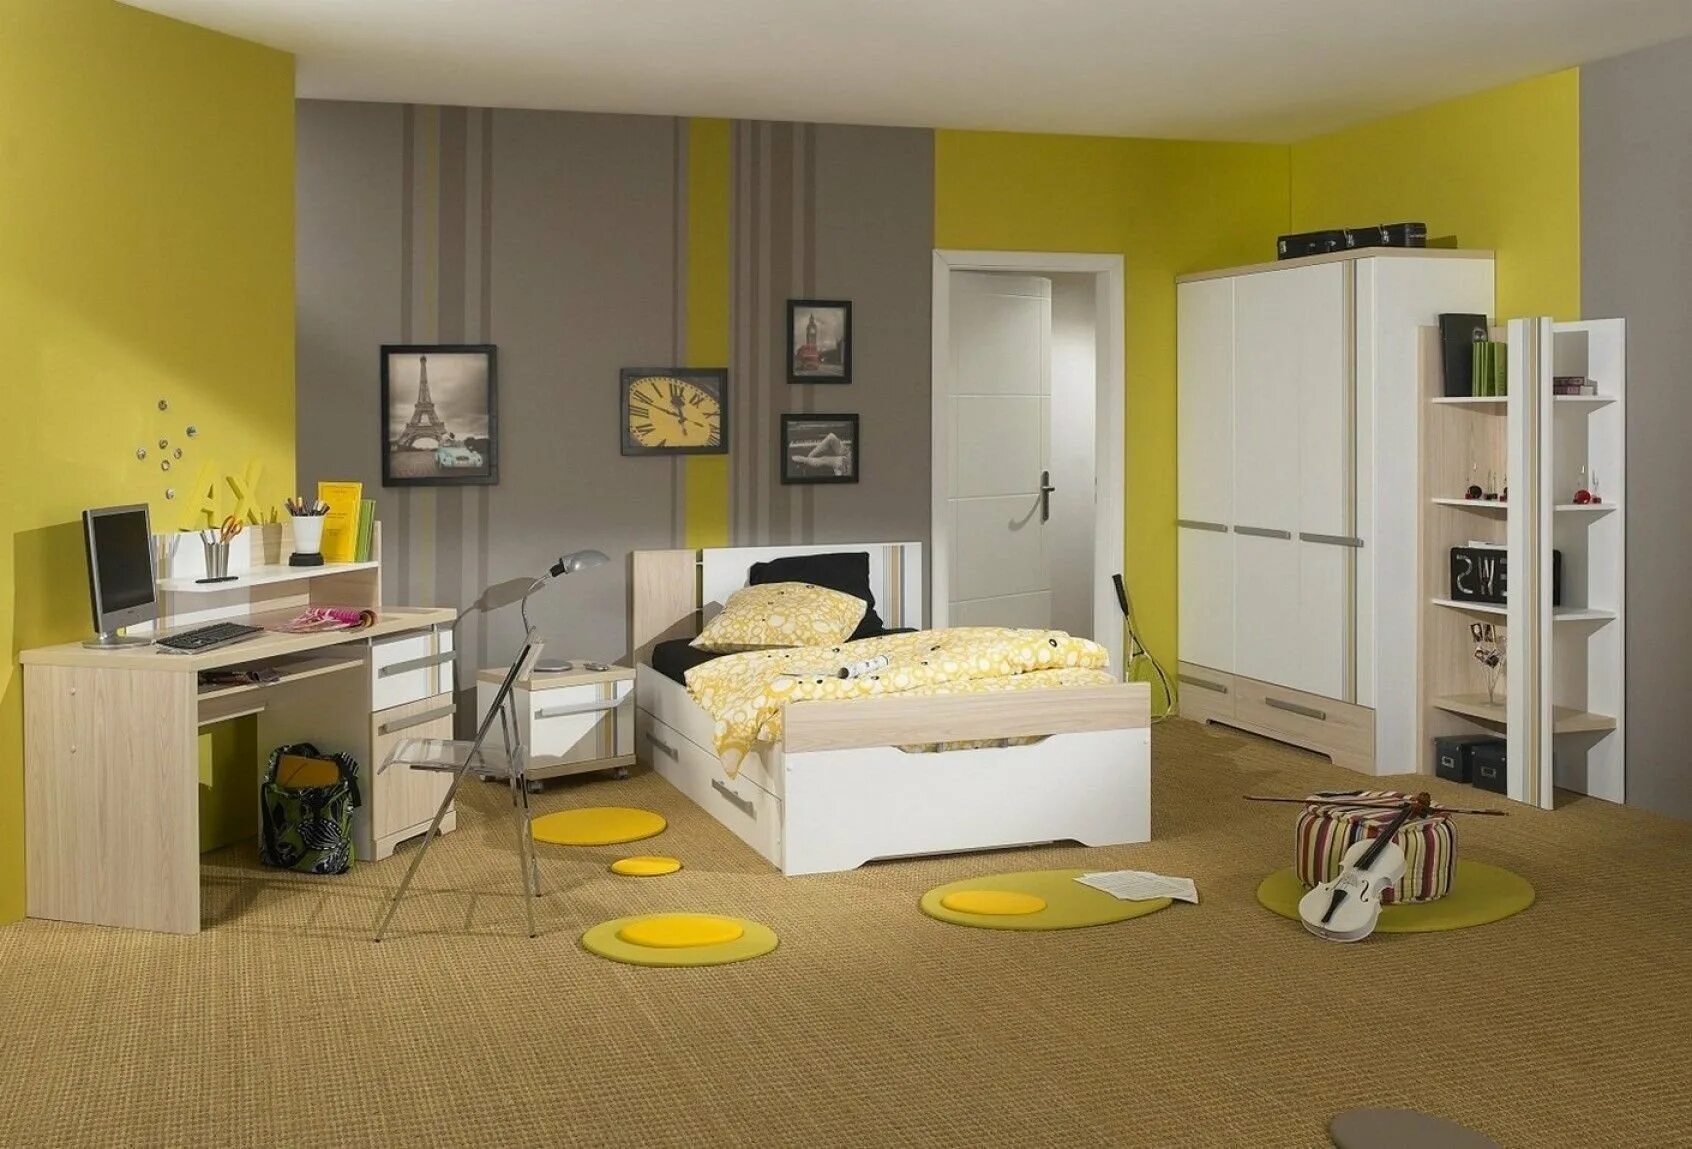 Детская мебель серая. Комната в желтом цвете. Детская комната в желтом цвете. Серо желтая детская комната для подростка. Детская комната в серо-желтом цвете.